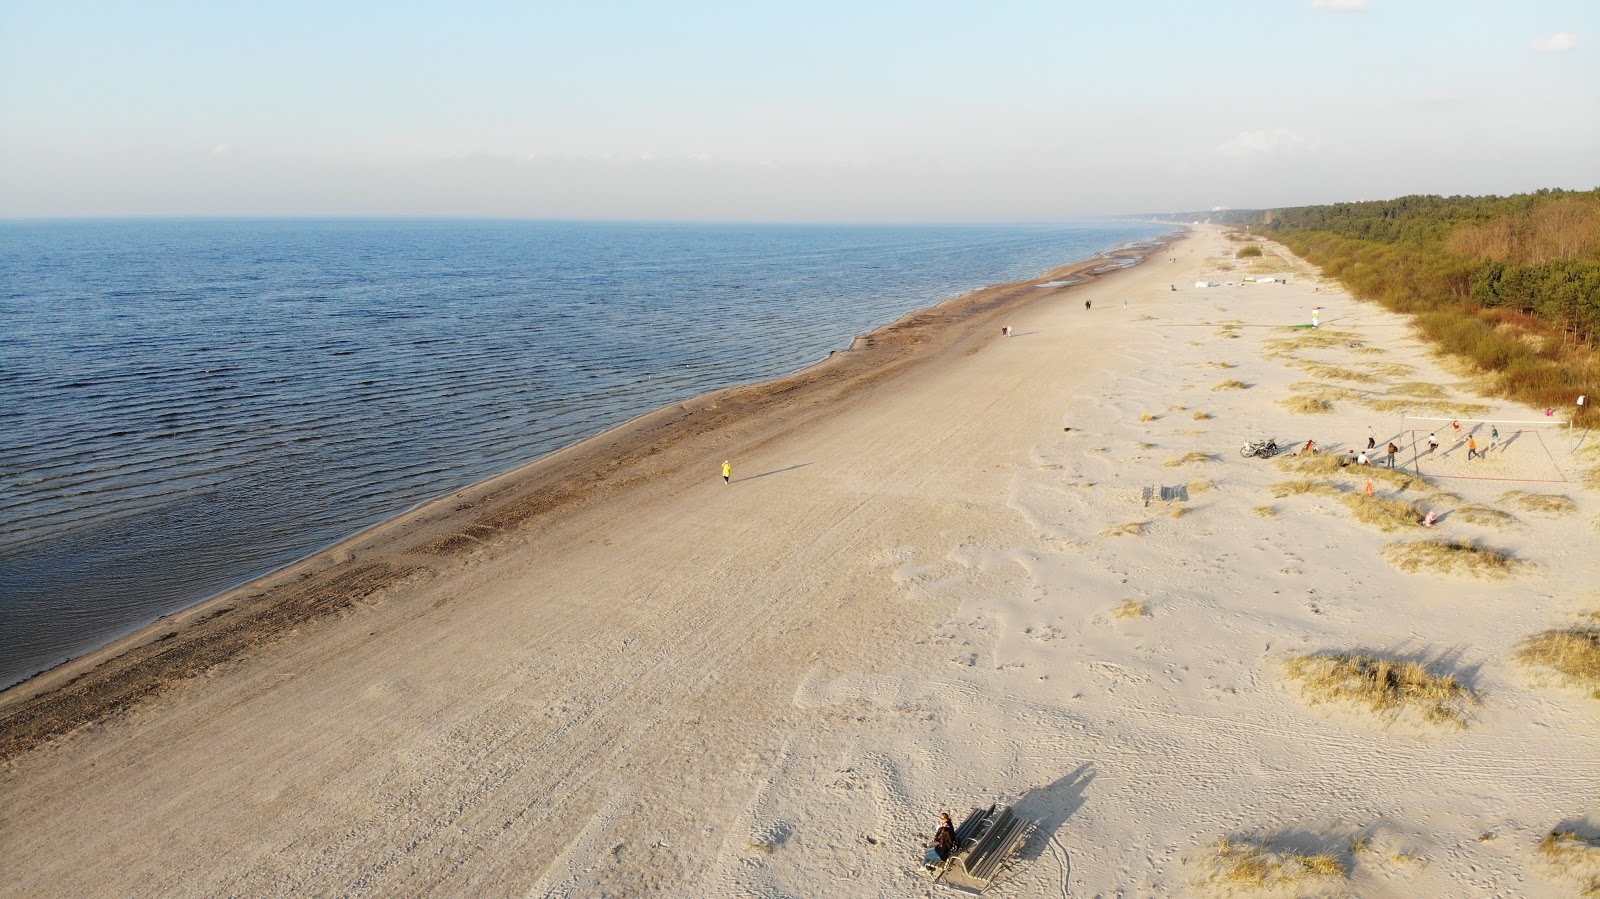 Zdjęcie Melluzu pludmale - popularne miejsce wśród znawców relaksu